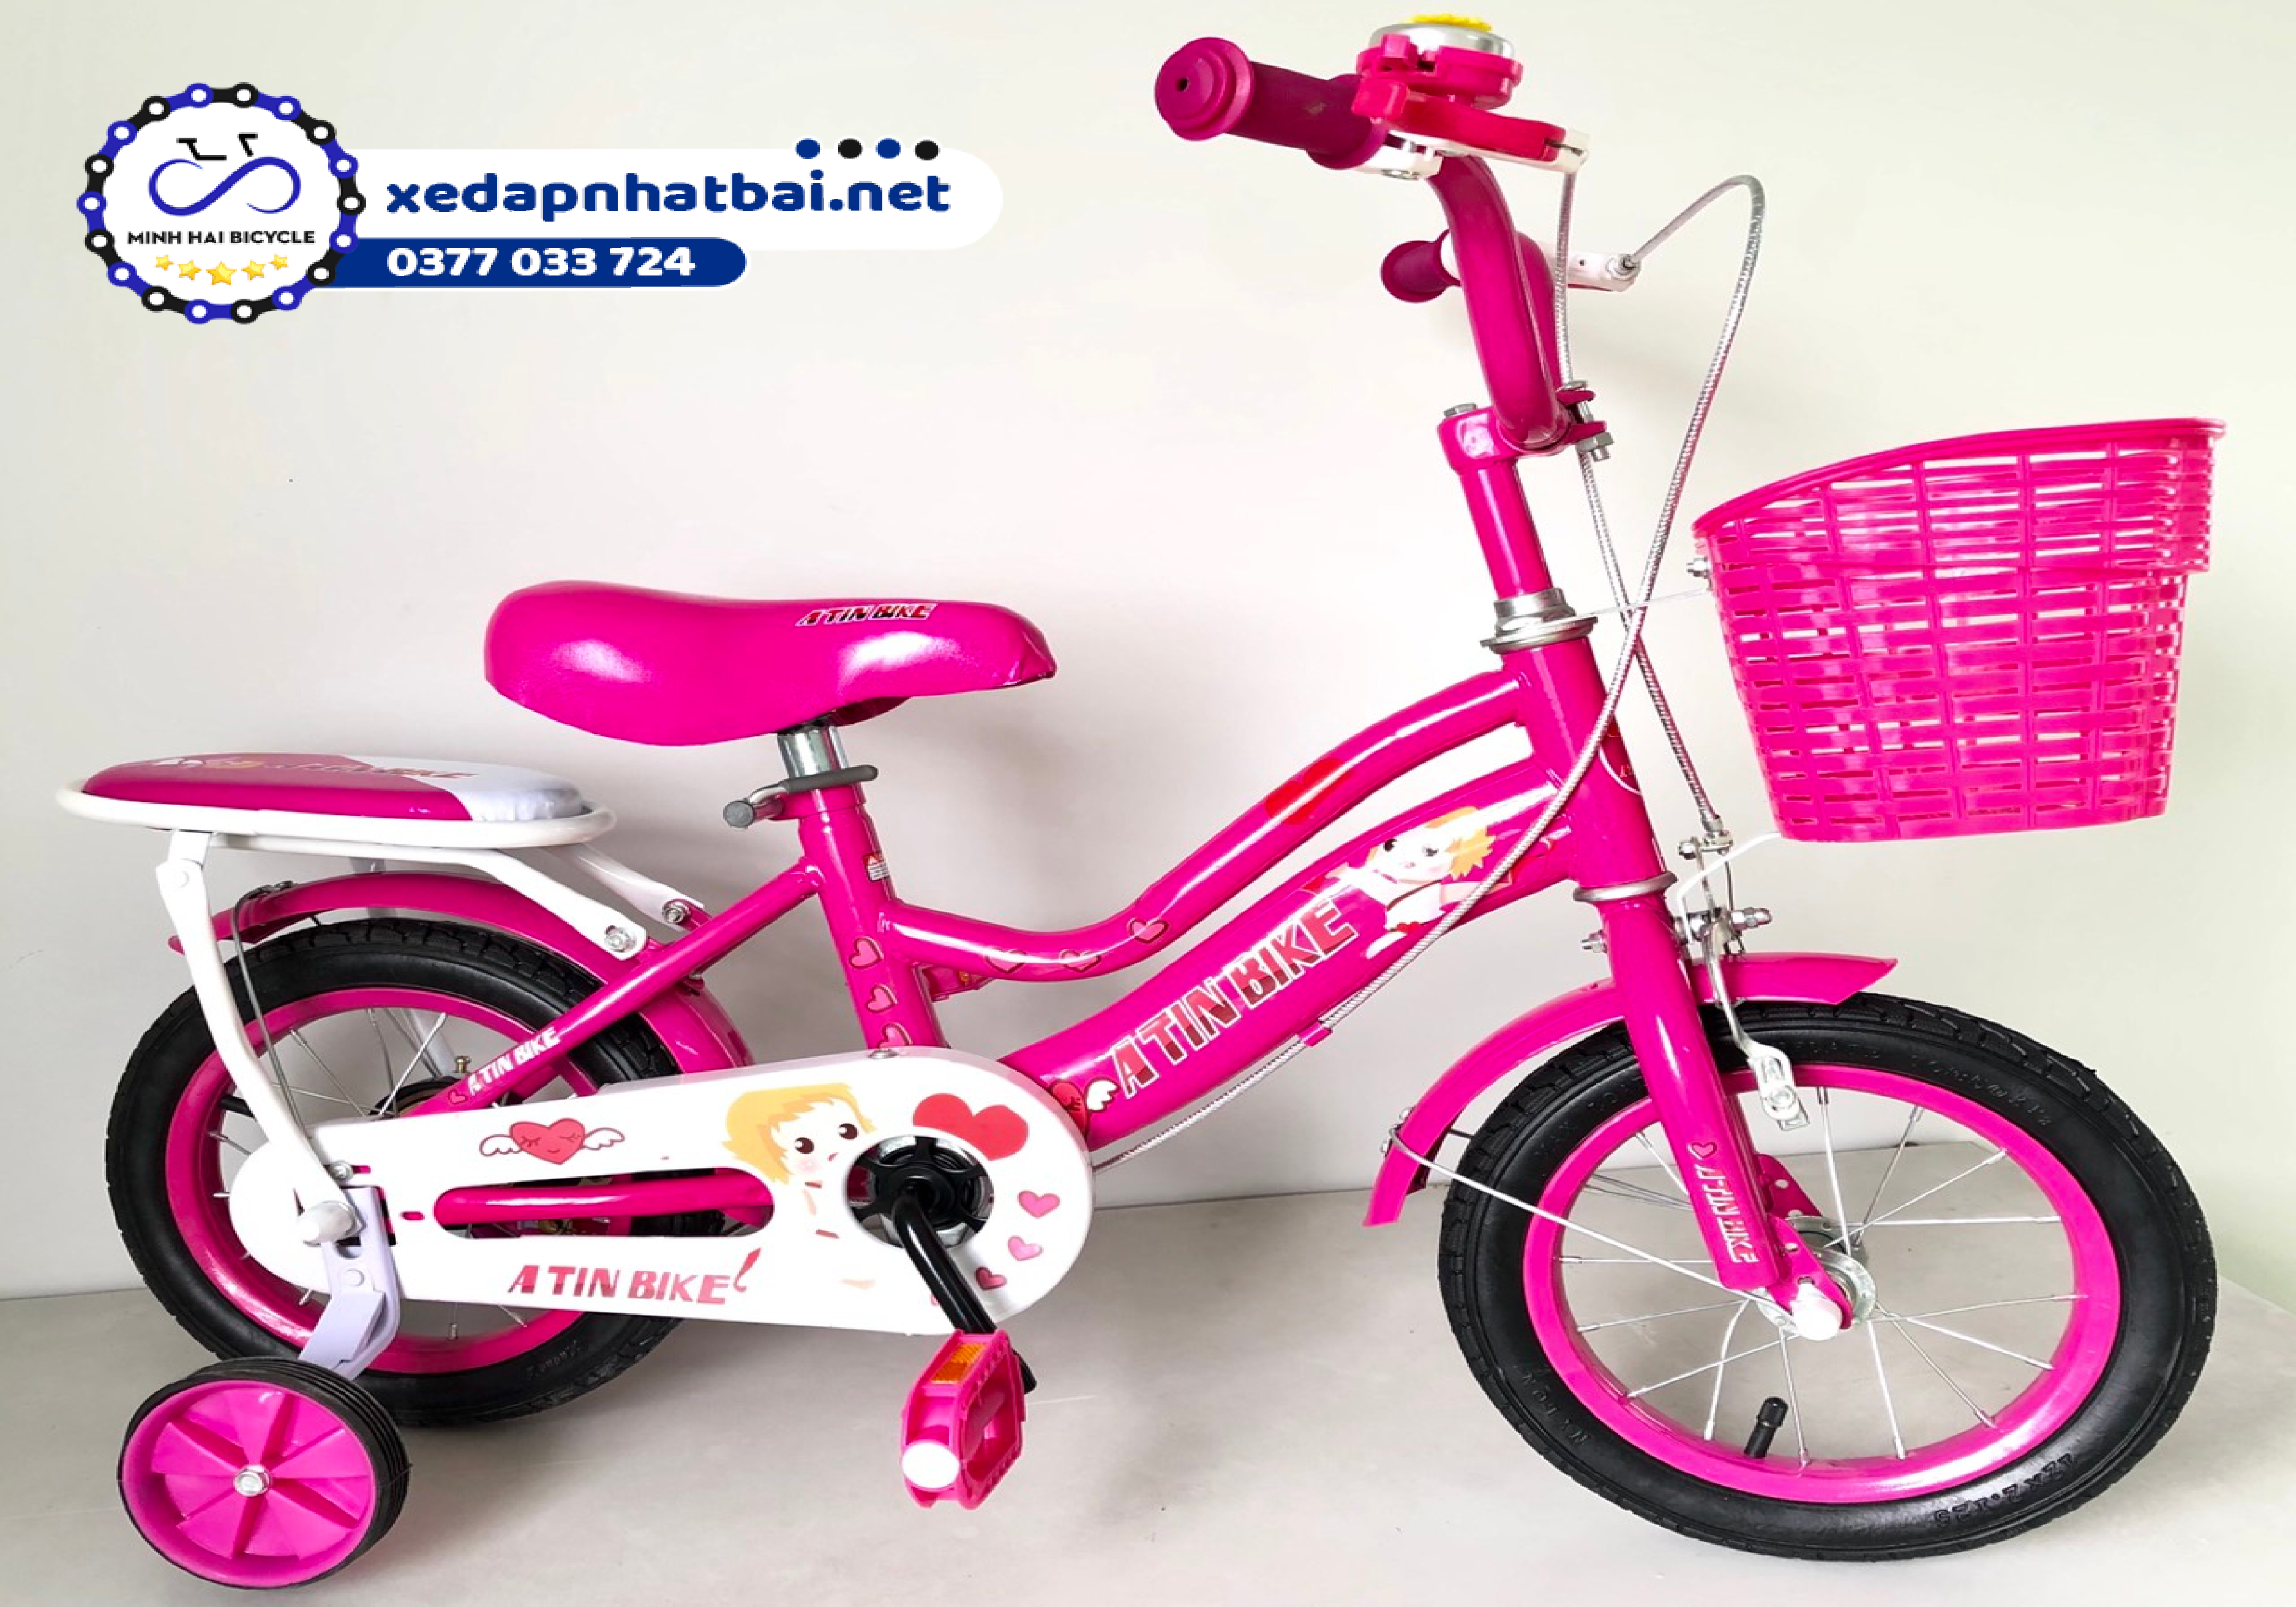 Xe đạp màu hồng phấn nhẹ nhàng cho bé 2 tuổi là nữ, với gam màu nhã nhặn, xinh xắn, chắc chắn sẽ làm các bé thích mê